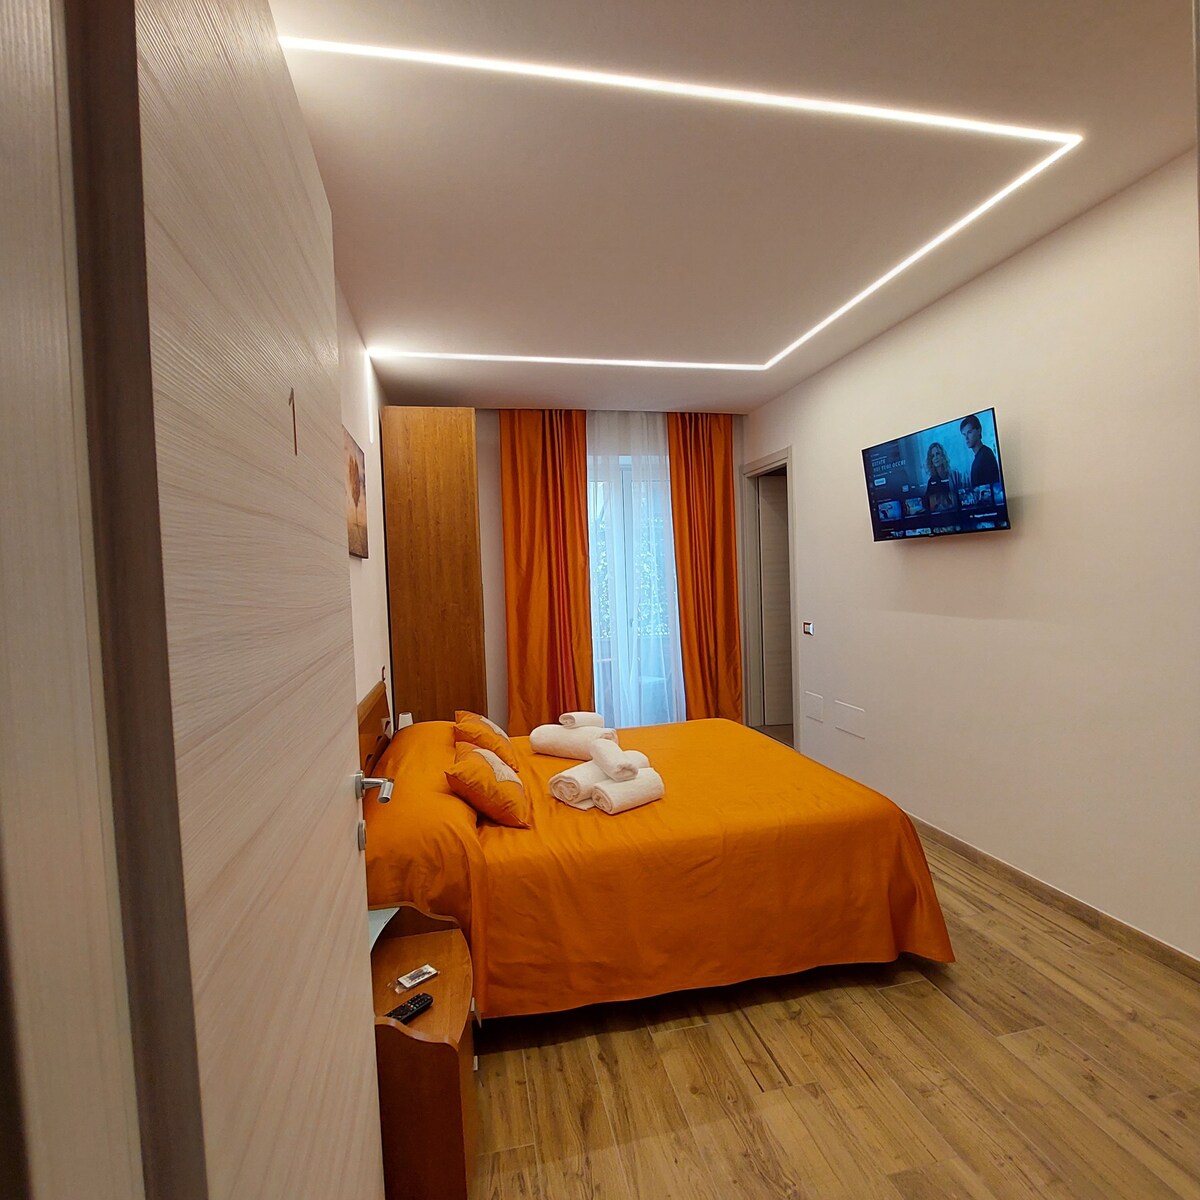 1 letto matrimoniale camera arancio